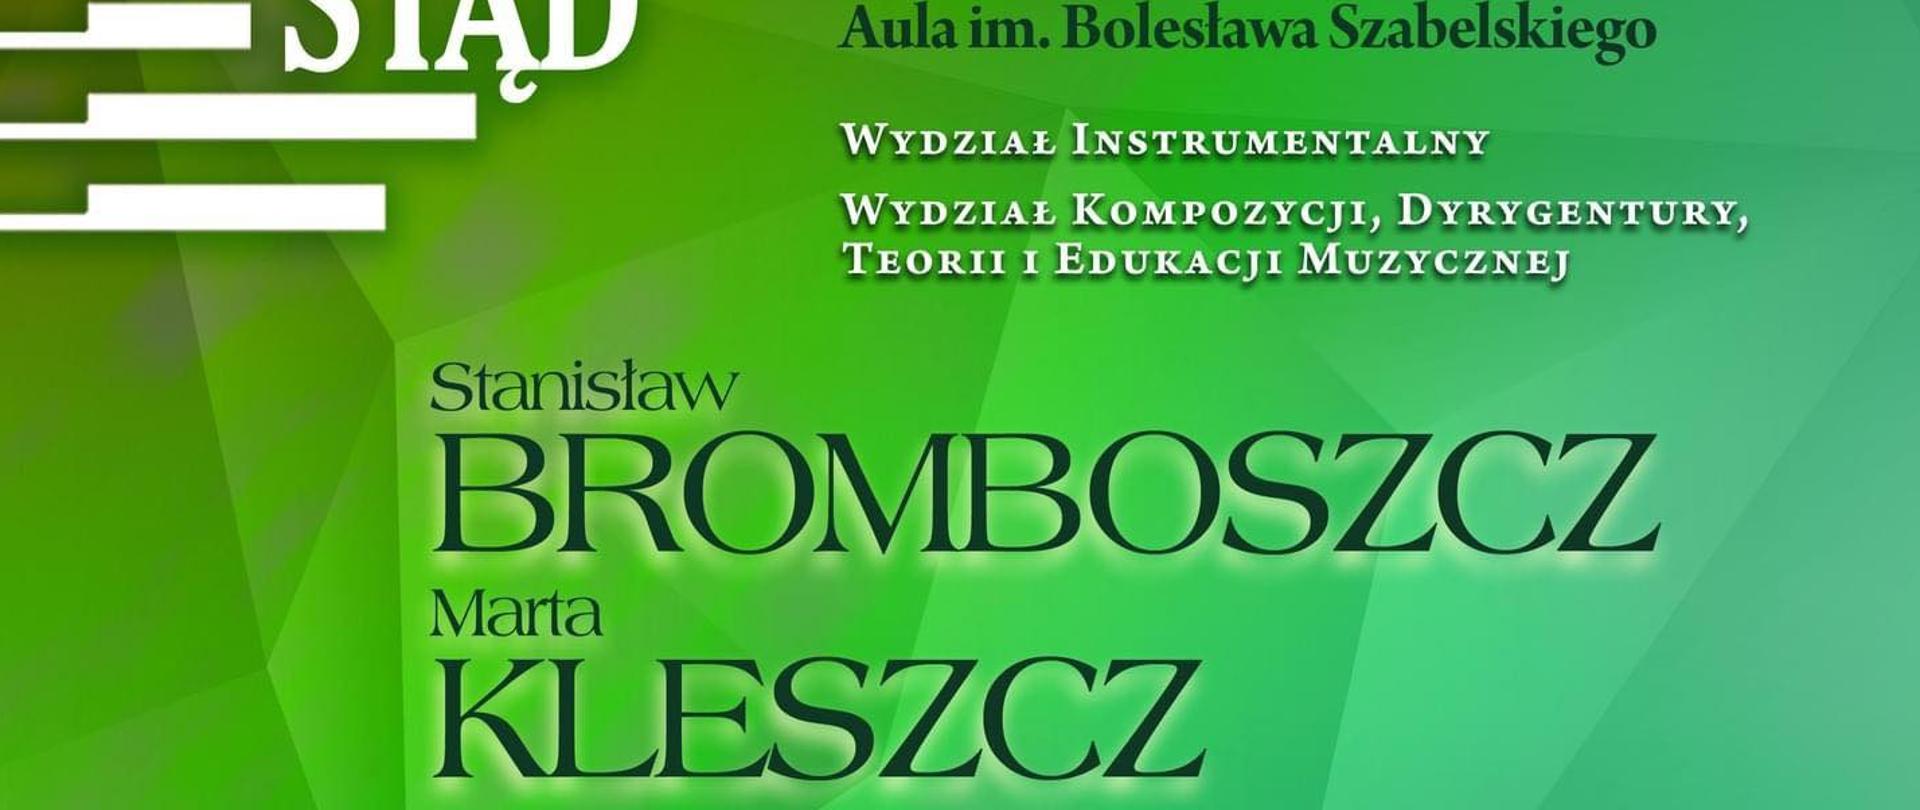 Plakat zawiera informacje o koncercie, odbywającym się na Akademii Muzycznej w Katowicach 16 stycznia 2023 roku o g.17.00. Wymienieni są kompozytorzy oraz wykonawcy.